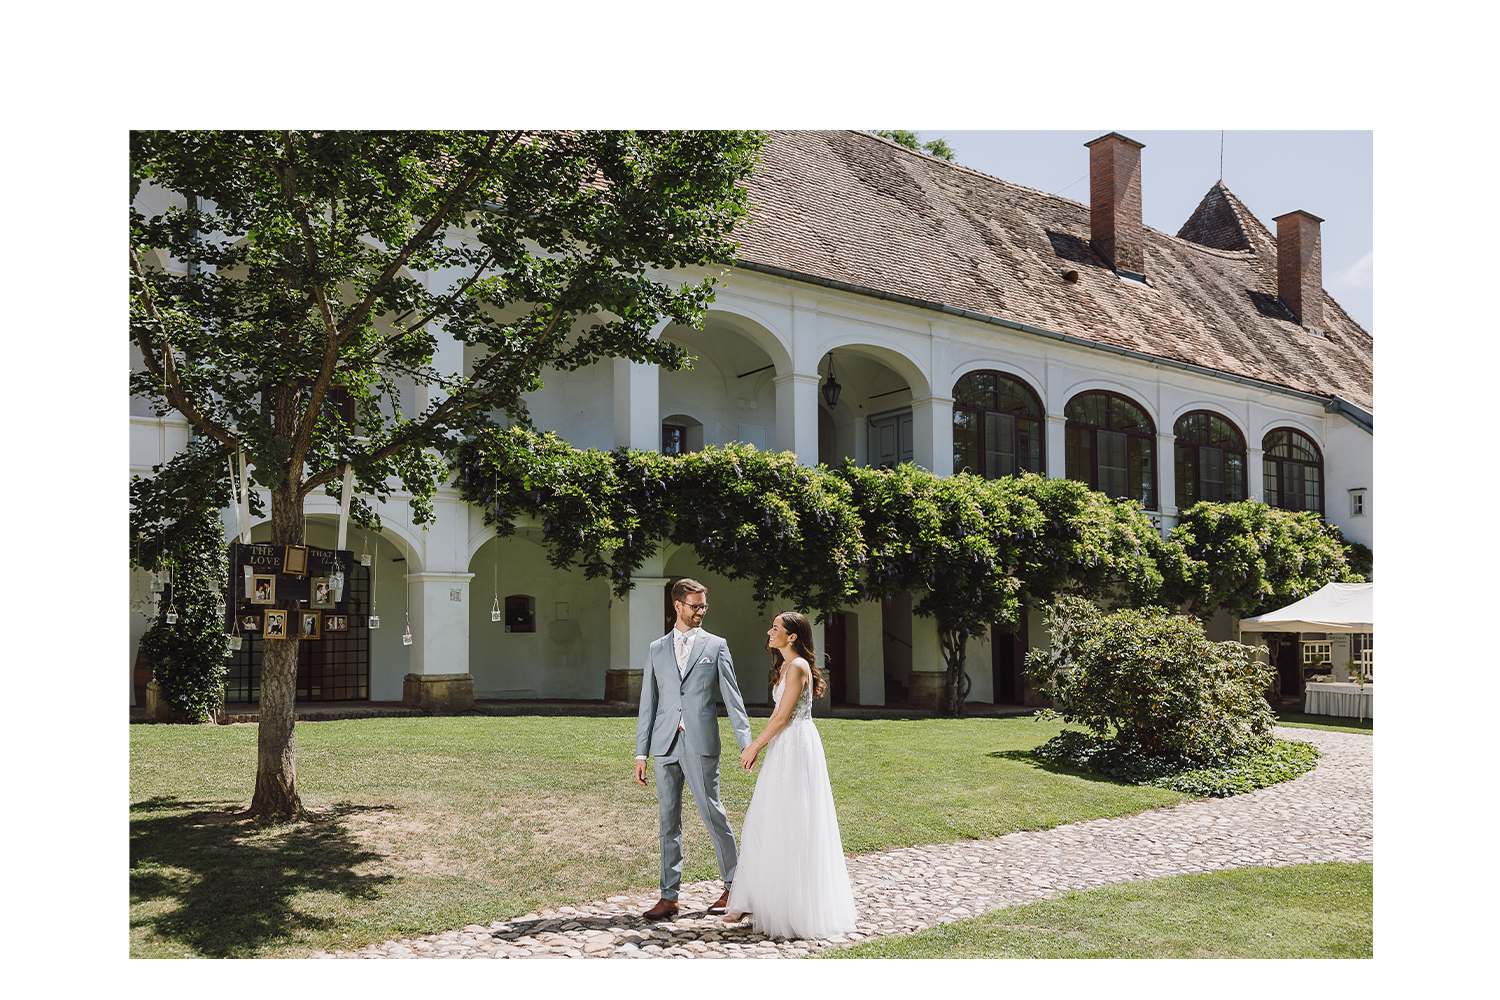 Heiraten auf Schloss Welsdorf in Fürstenfeld im Sommer